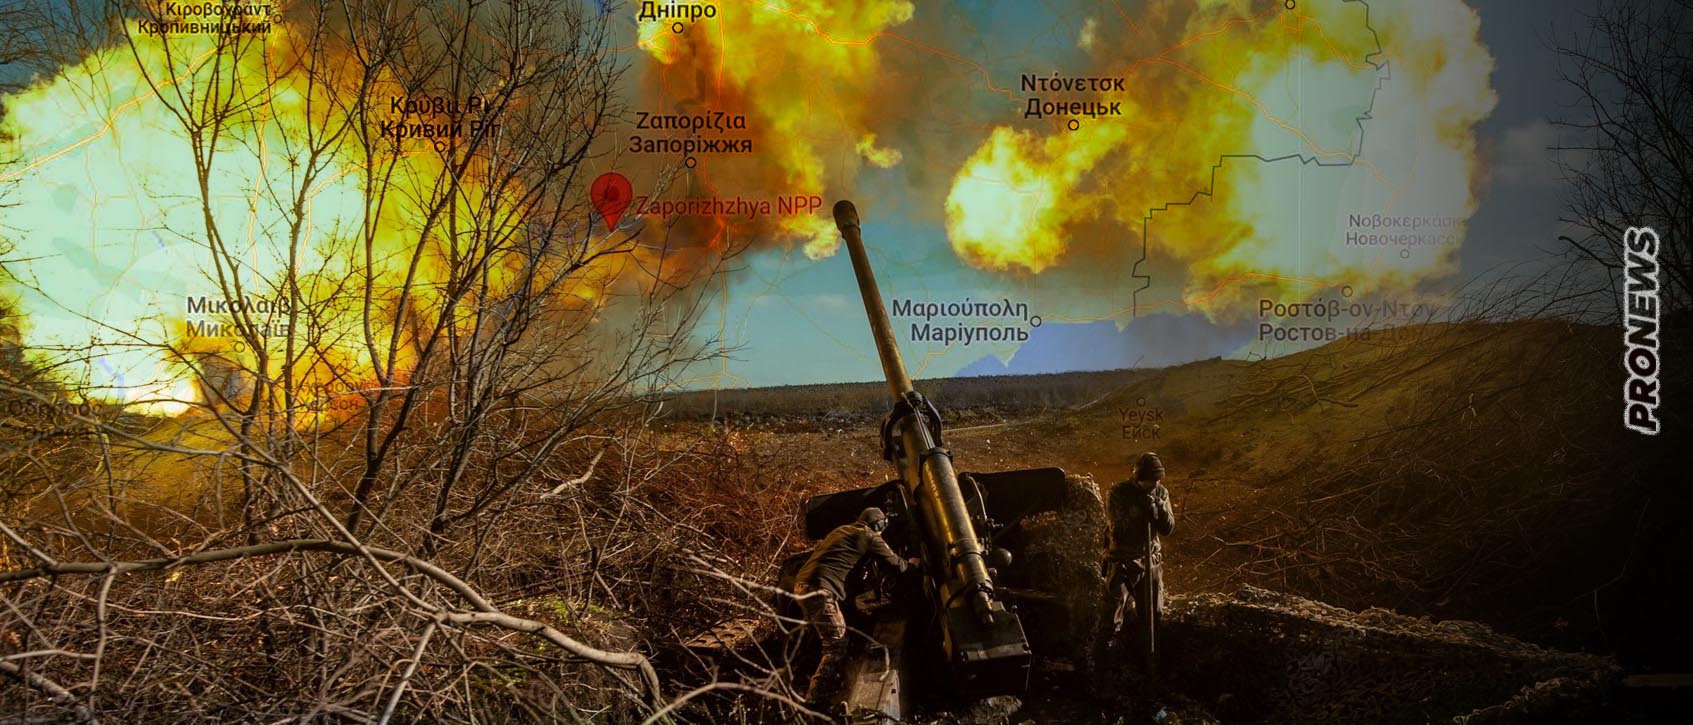 Συνετρίβη από τους Ρώσους η ουκρανική επίθεση στην Ζαπορίζια – Οι Ουκρανοί απωθήθηκαν πέρα από την «γκρίζα ζώνη»